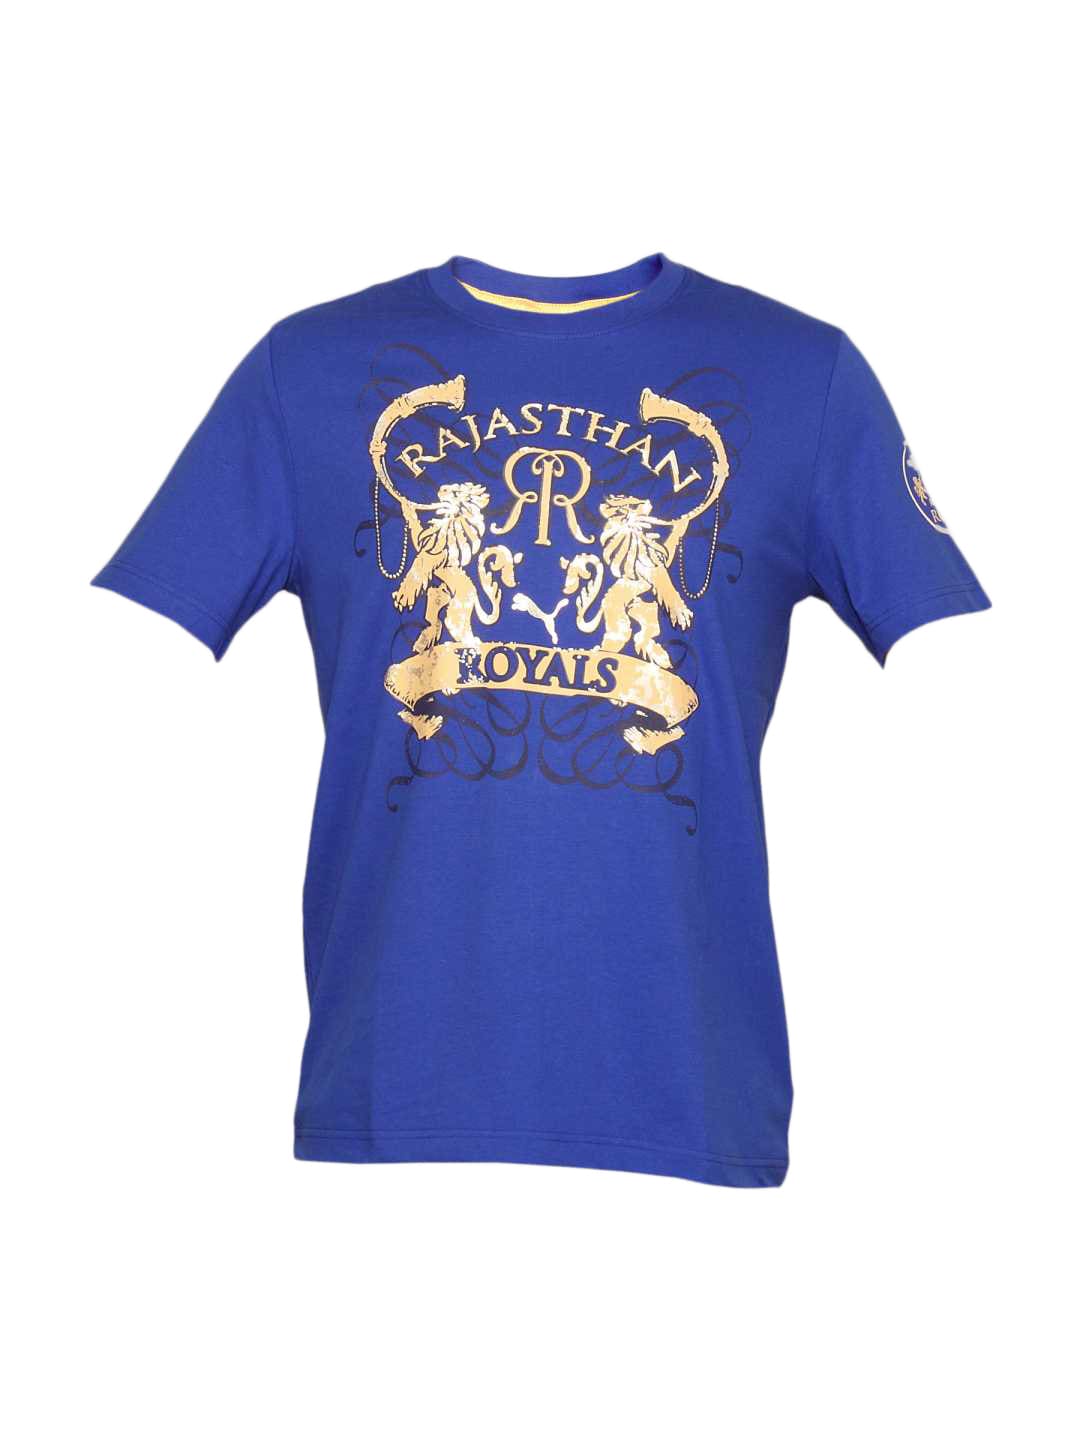 Puma Men's Rajasthan Royals Blue T-shirt